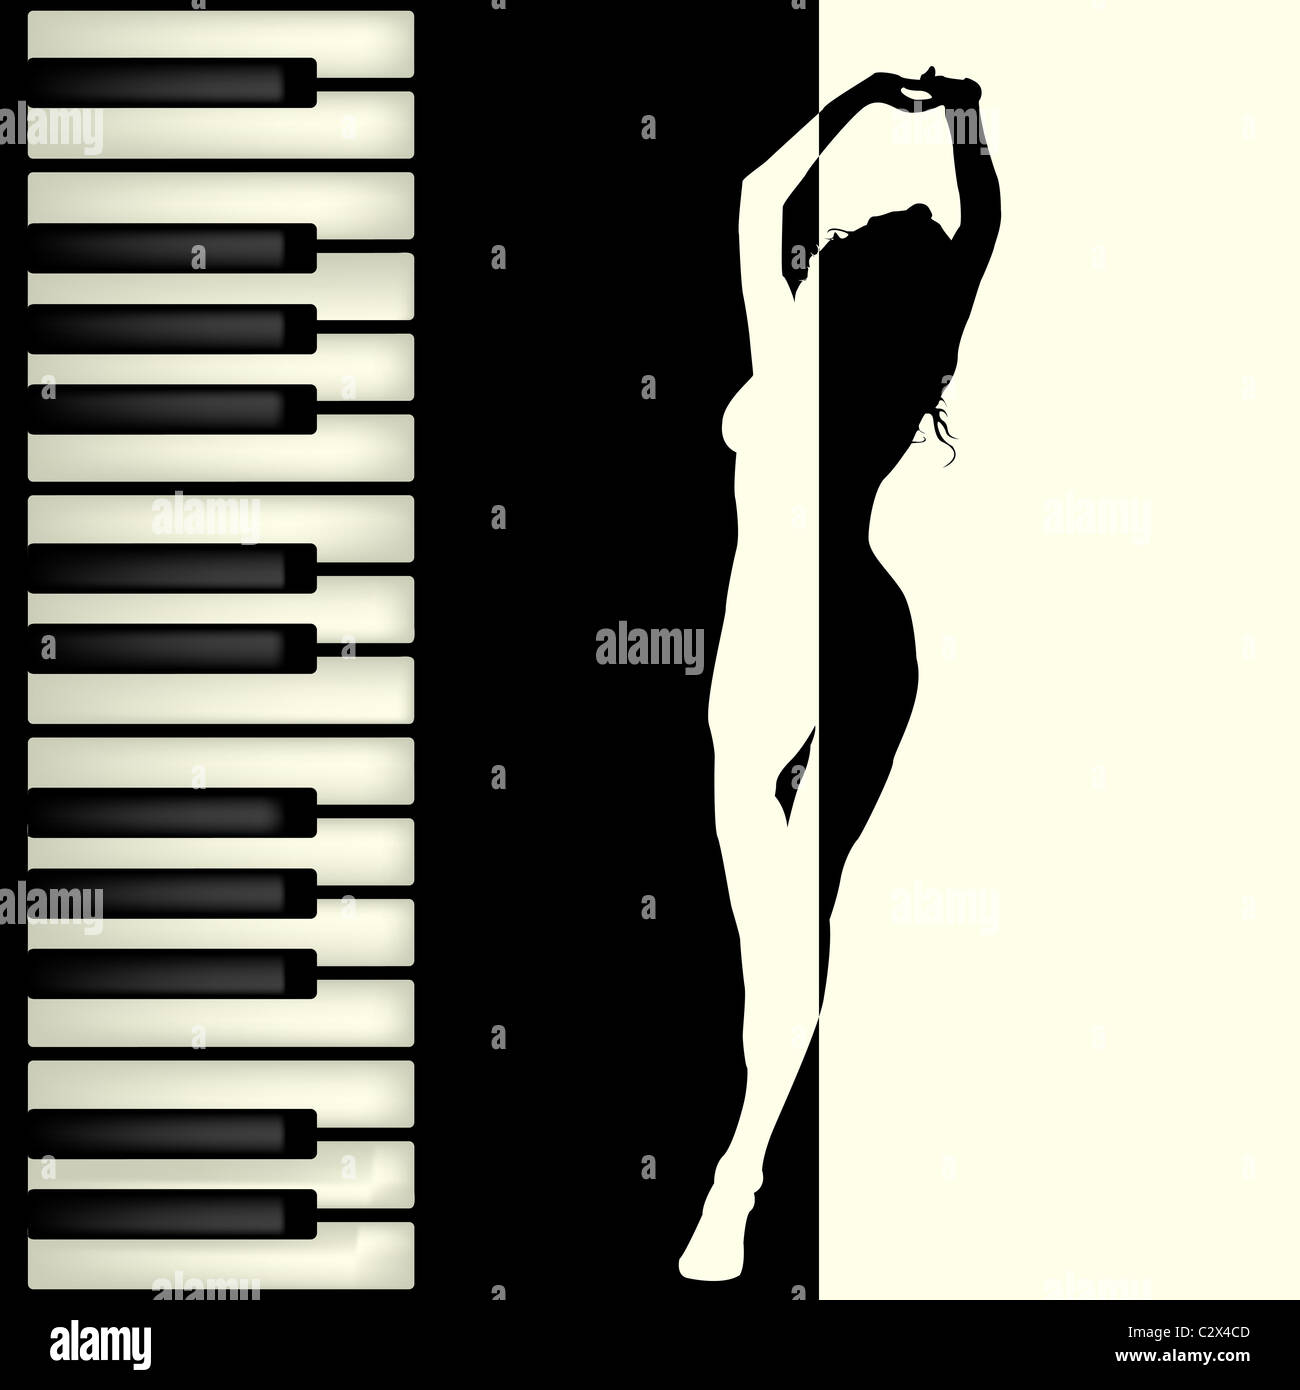 Piano bar brochure Stock Photo